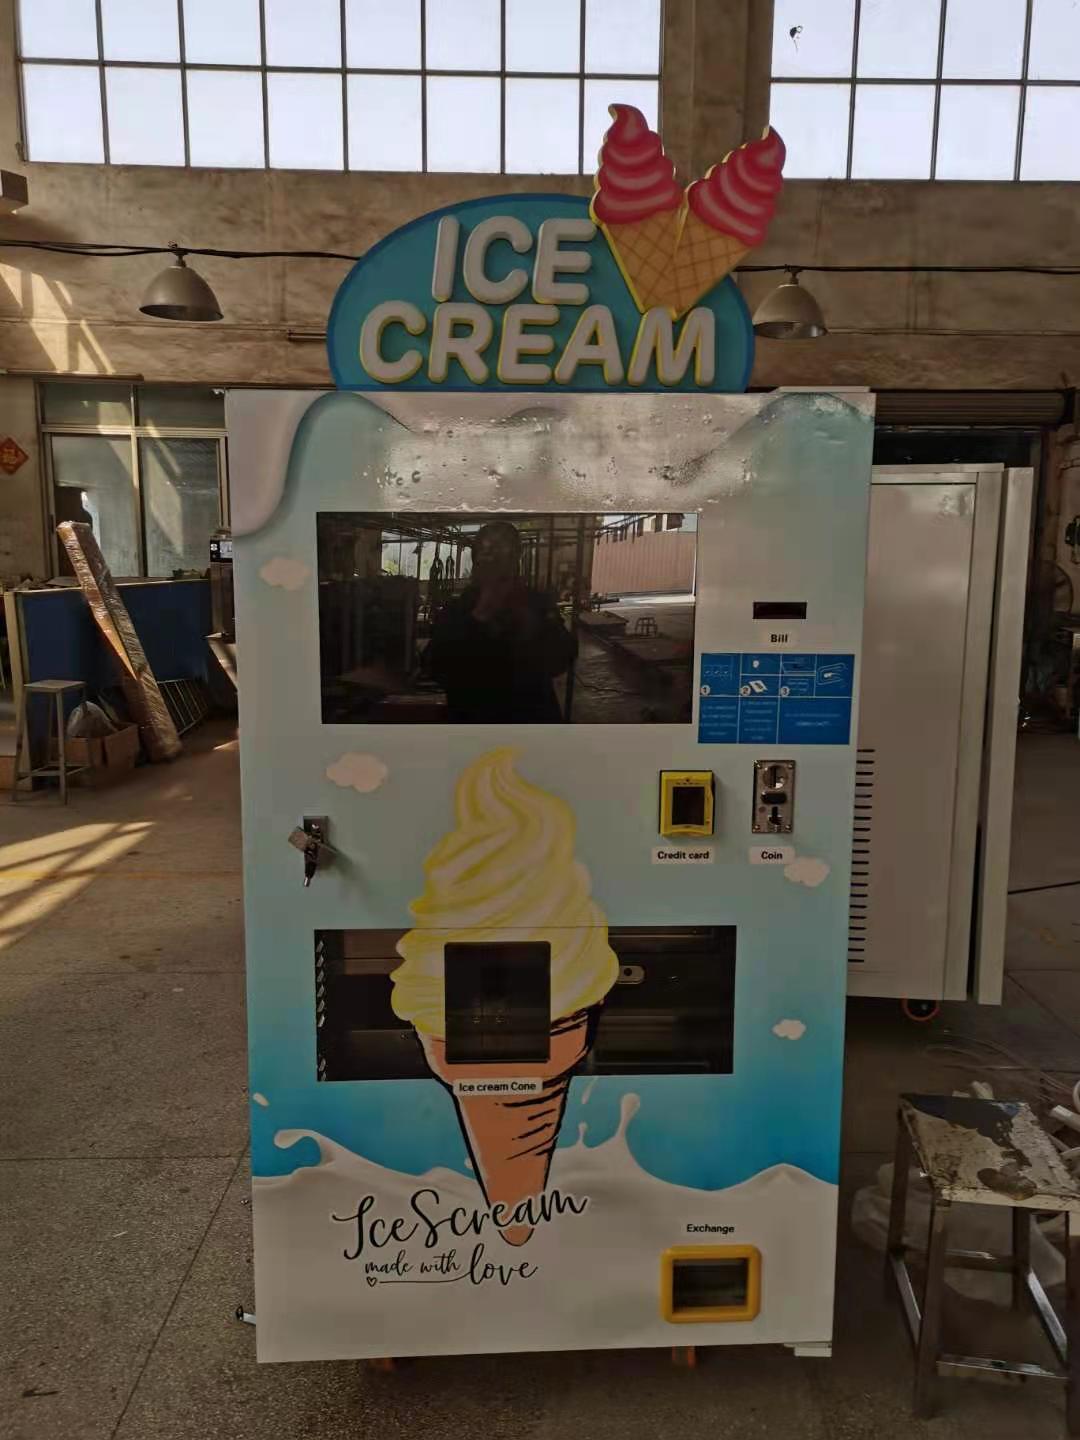 Máquina expendedora de helados para servicio las 24 horas.